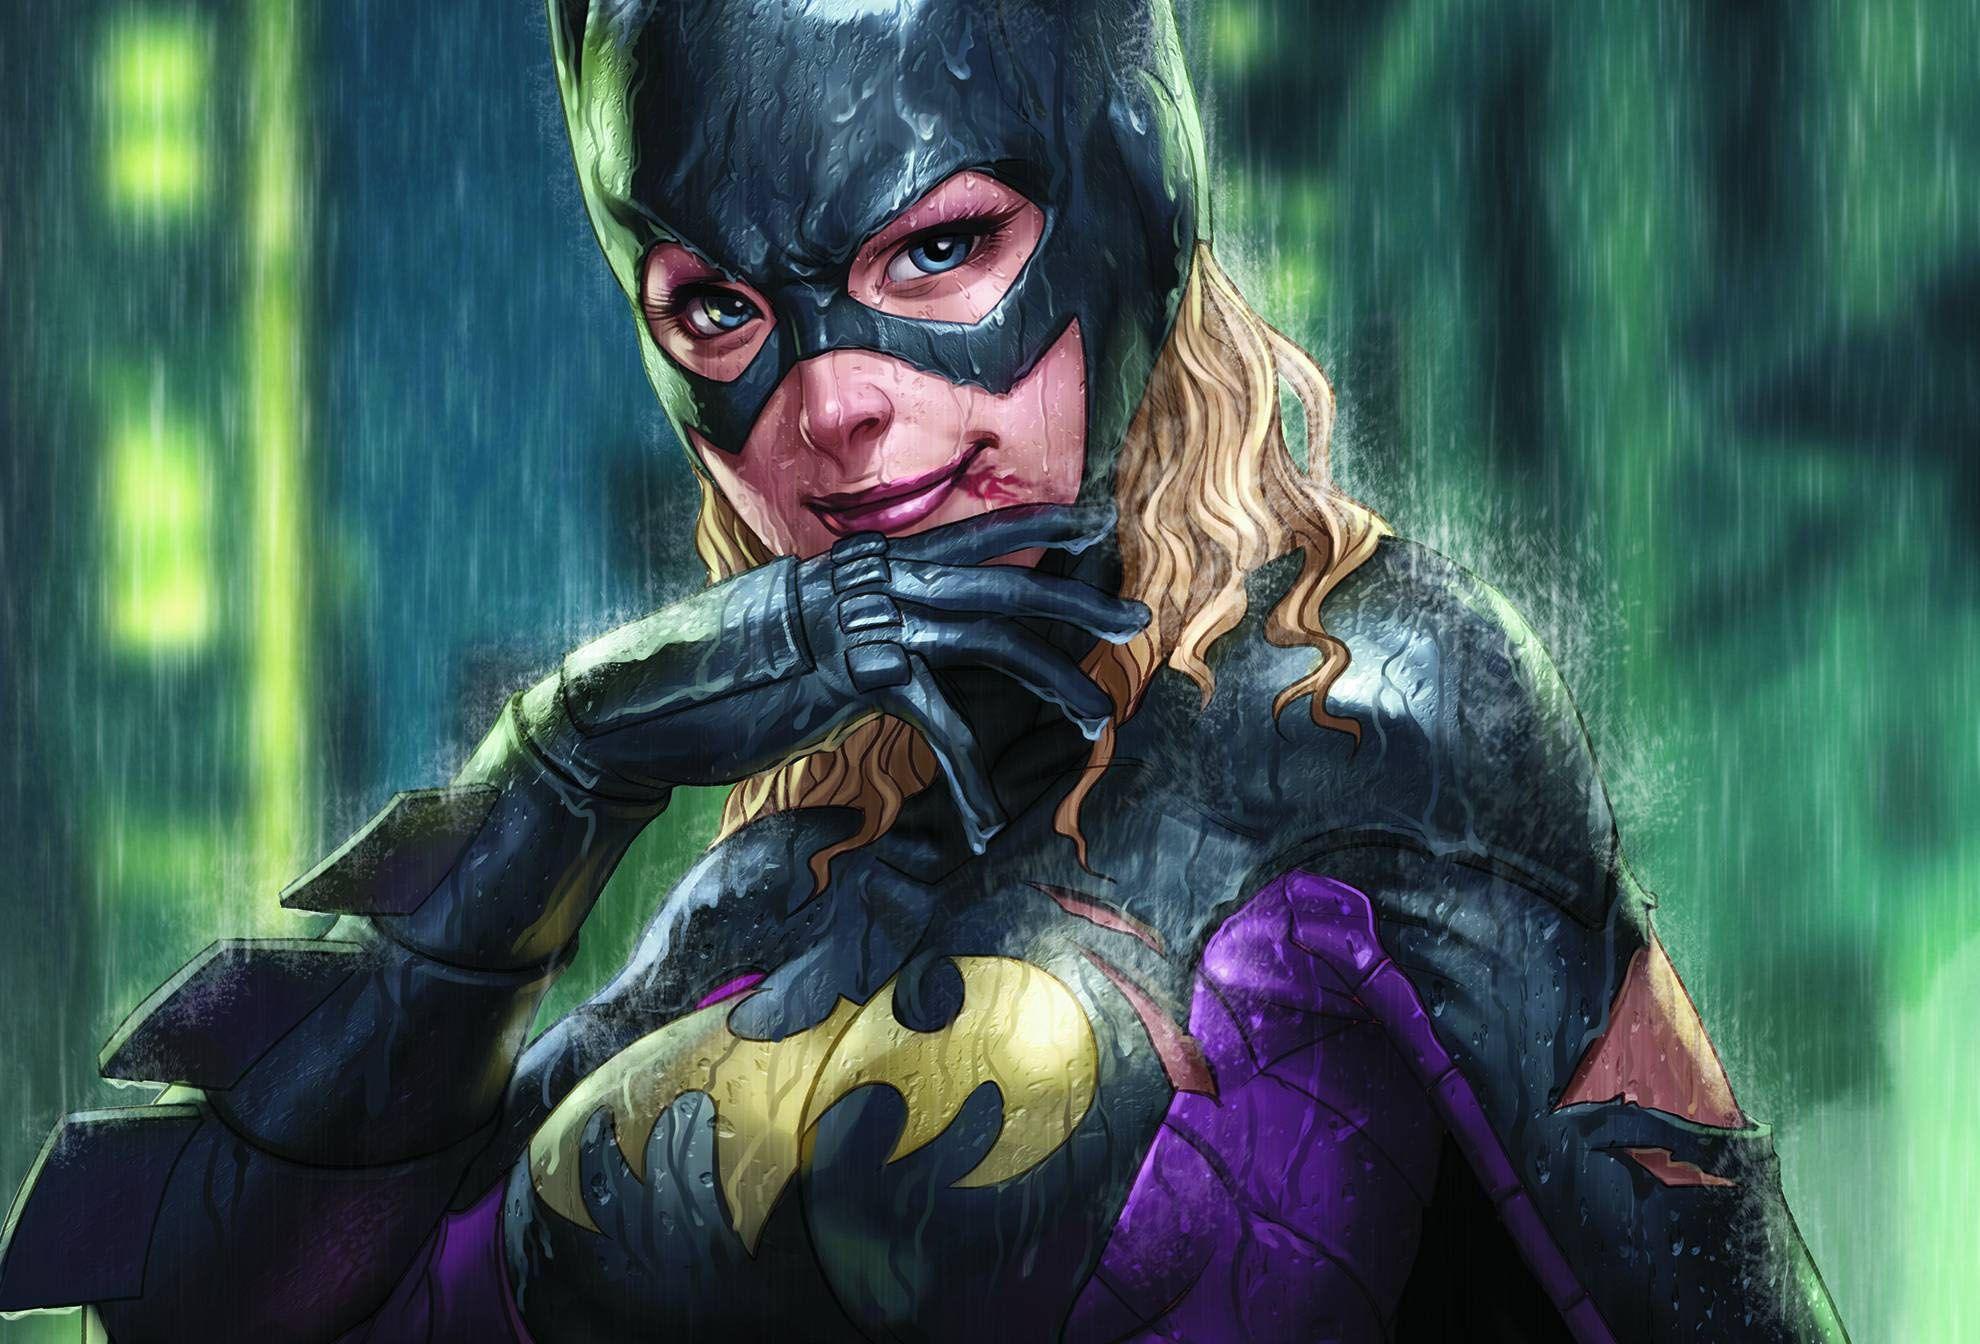 Batgirl Wallpaper from DC Comics